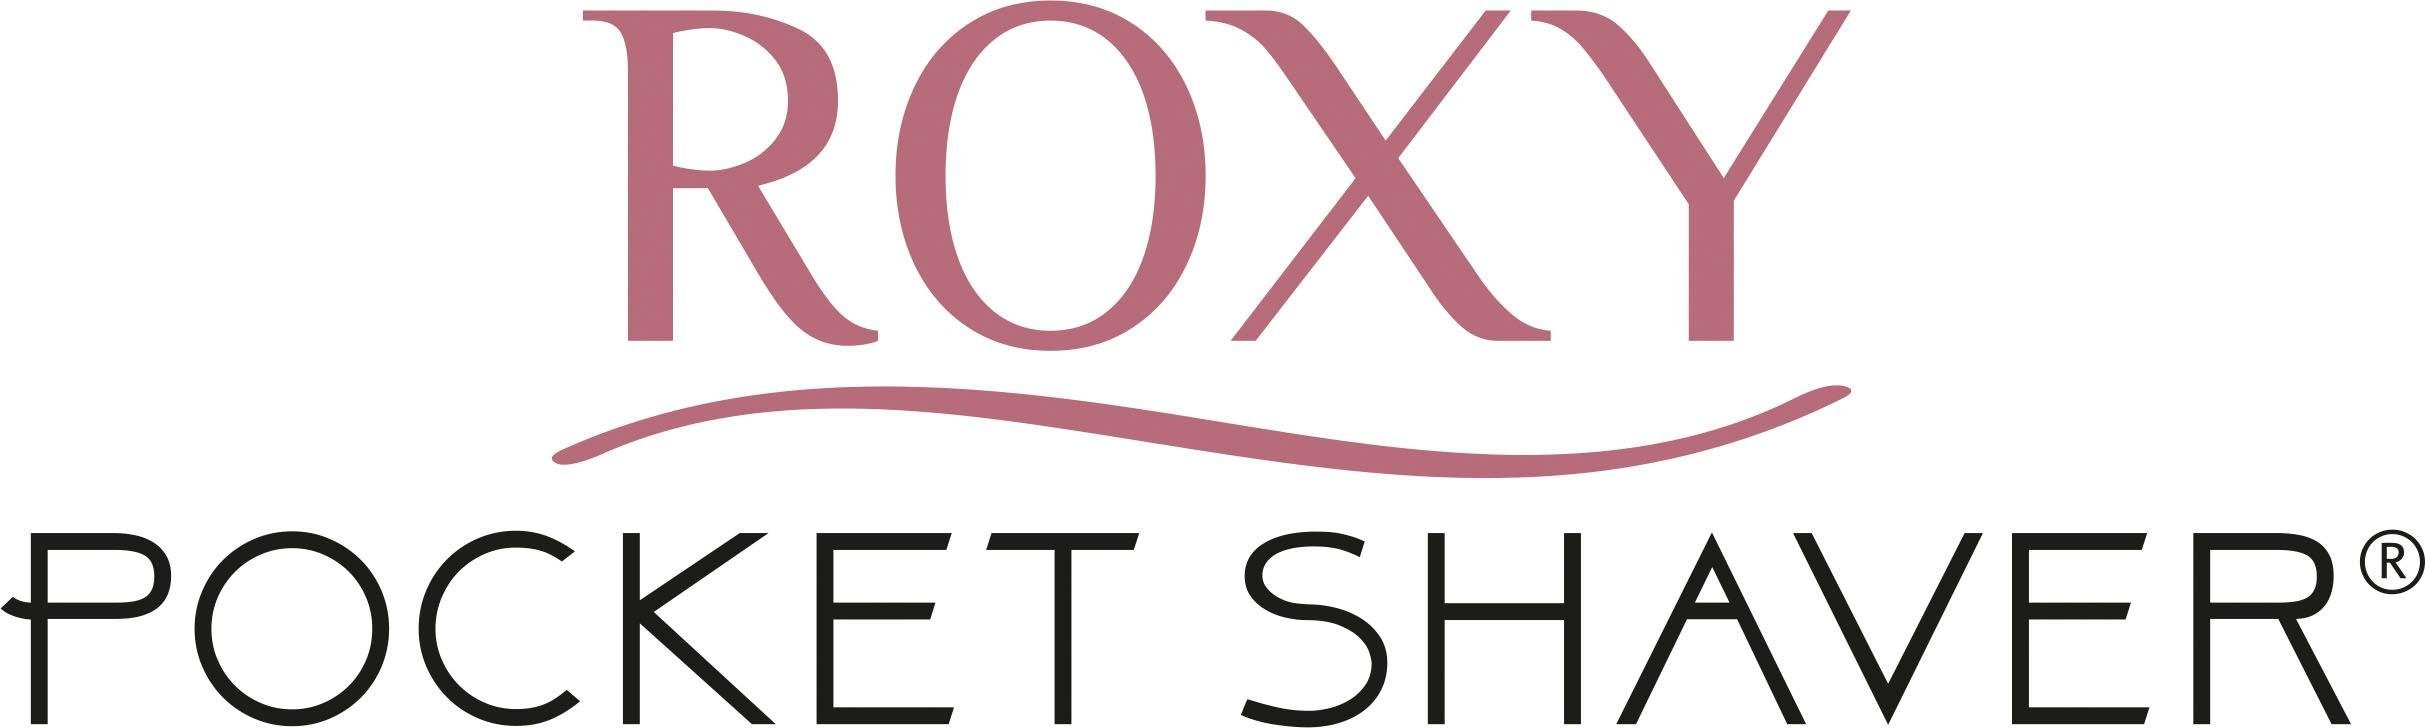 MediaShop Roxy Pocket Shaver, Elektrogesichtshaarentferner 2 Aufsätze: